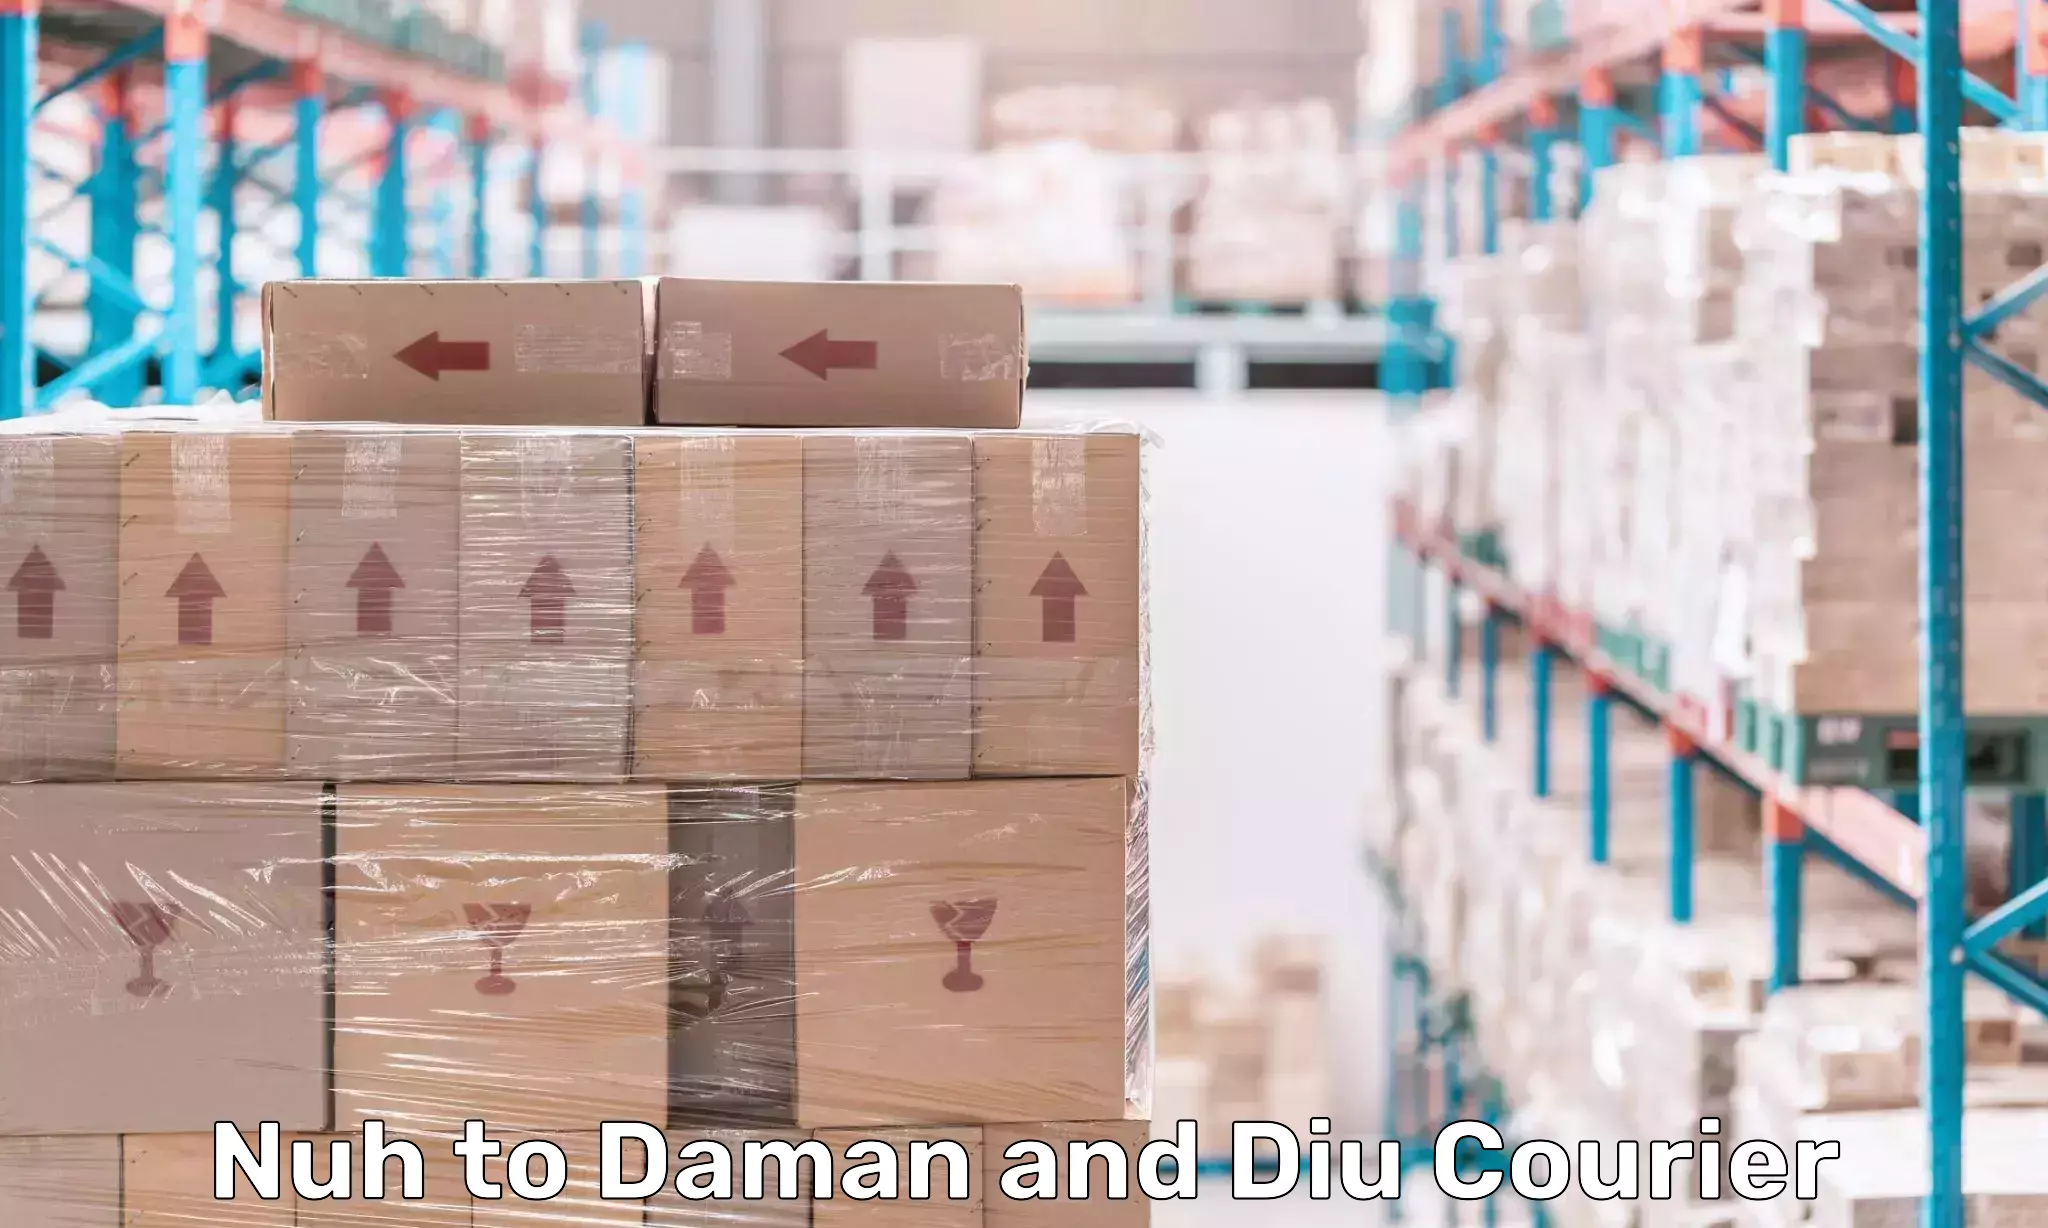 Efficient freight service Nuh to Daman and Diu